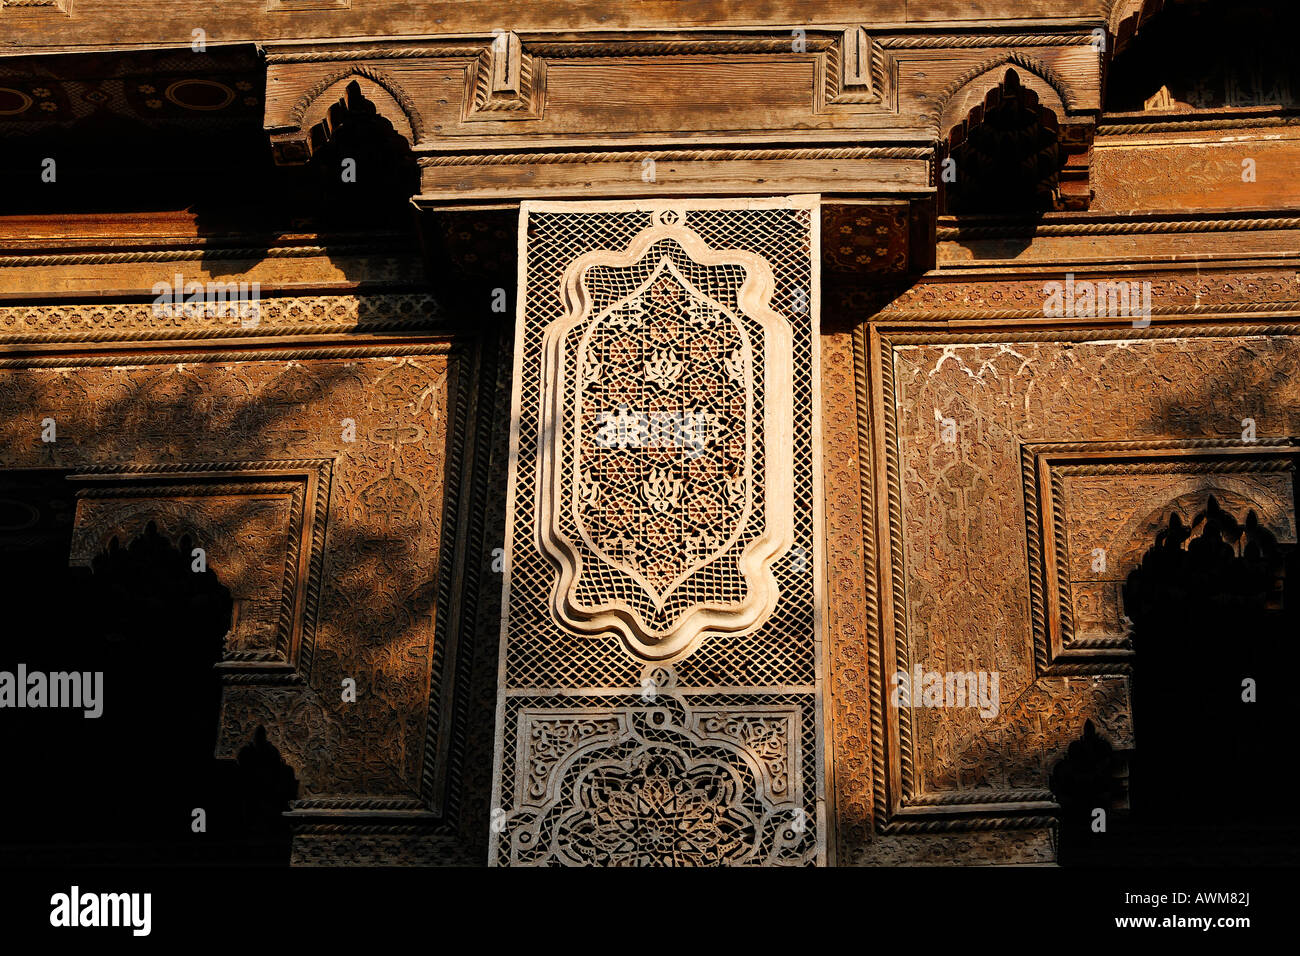 Dettaglio anteriore con intaglio artistico, il Palais de la Bahia, Medina, Marrakech, Marocco, Africa Foto Stock